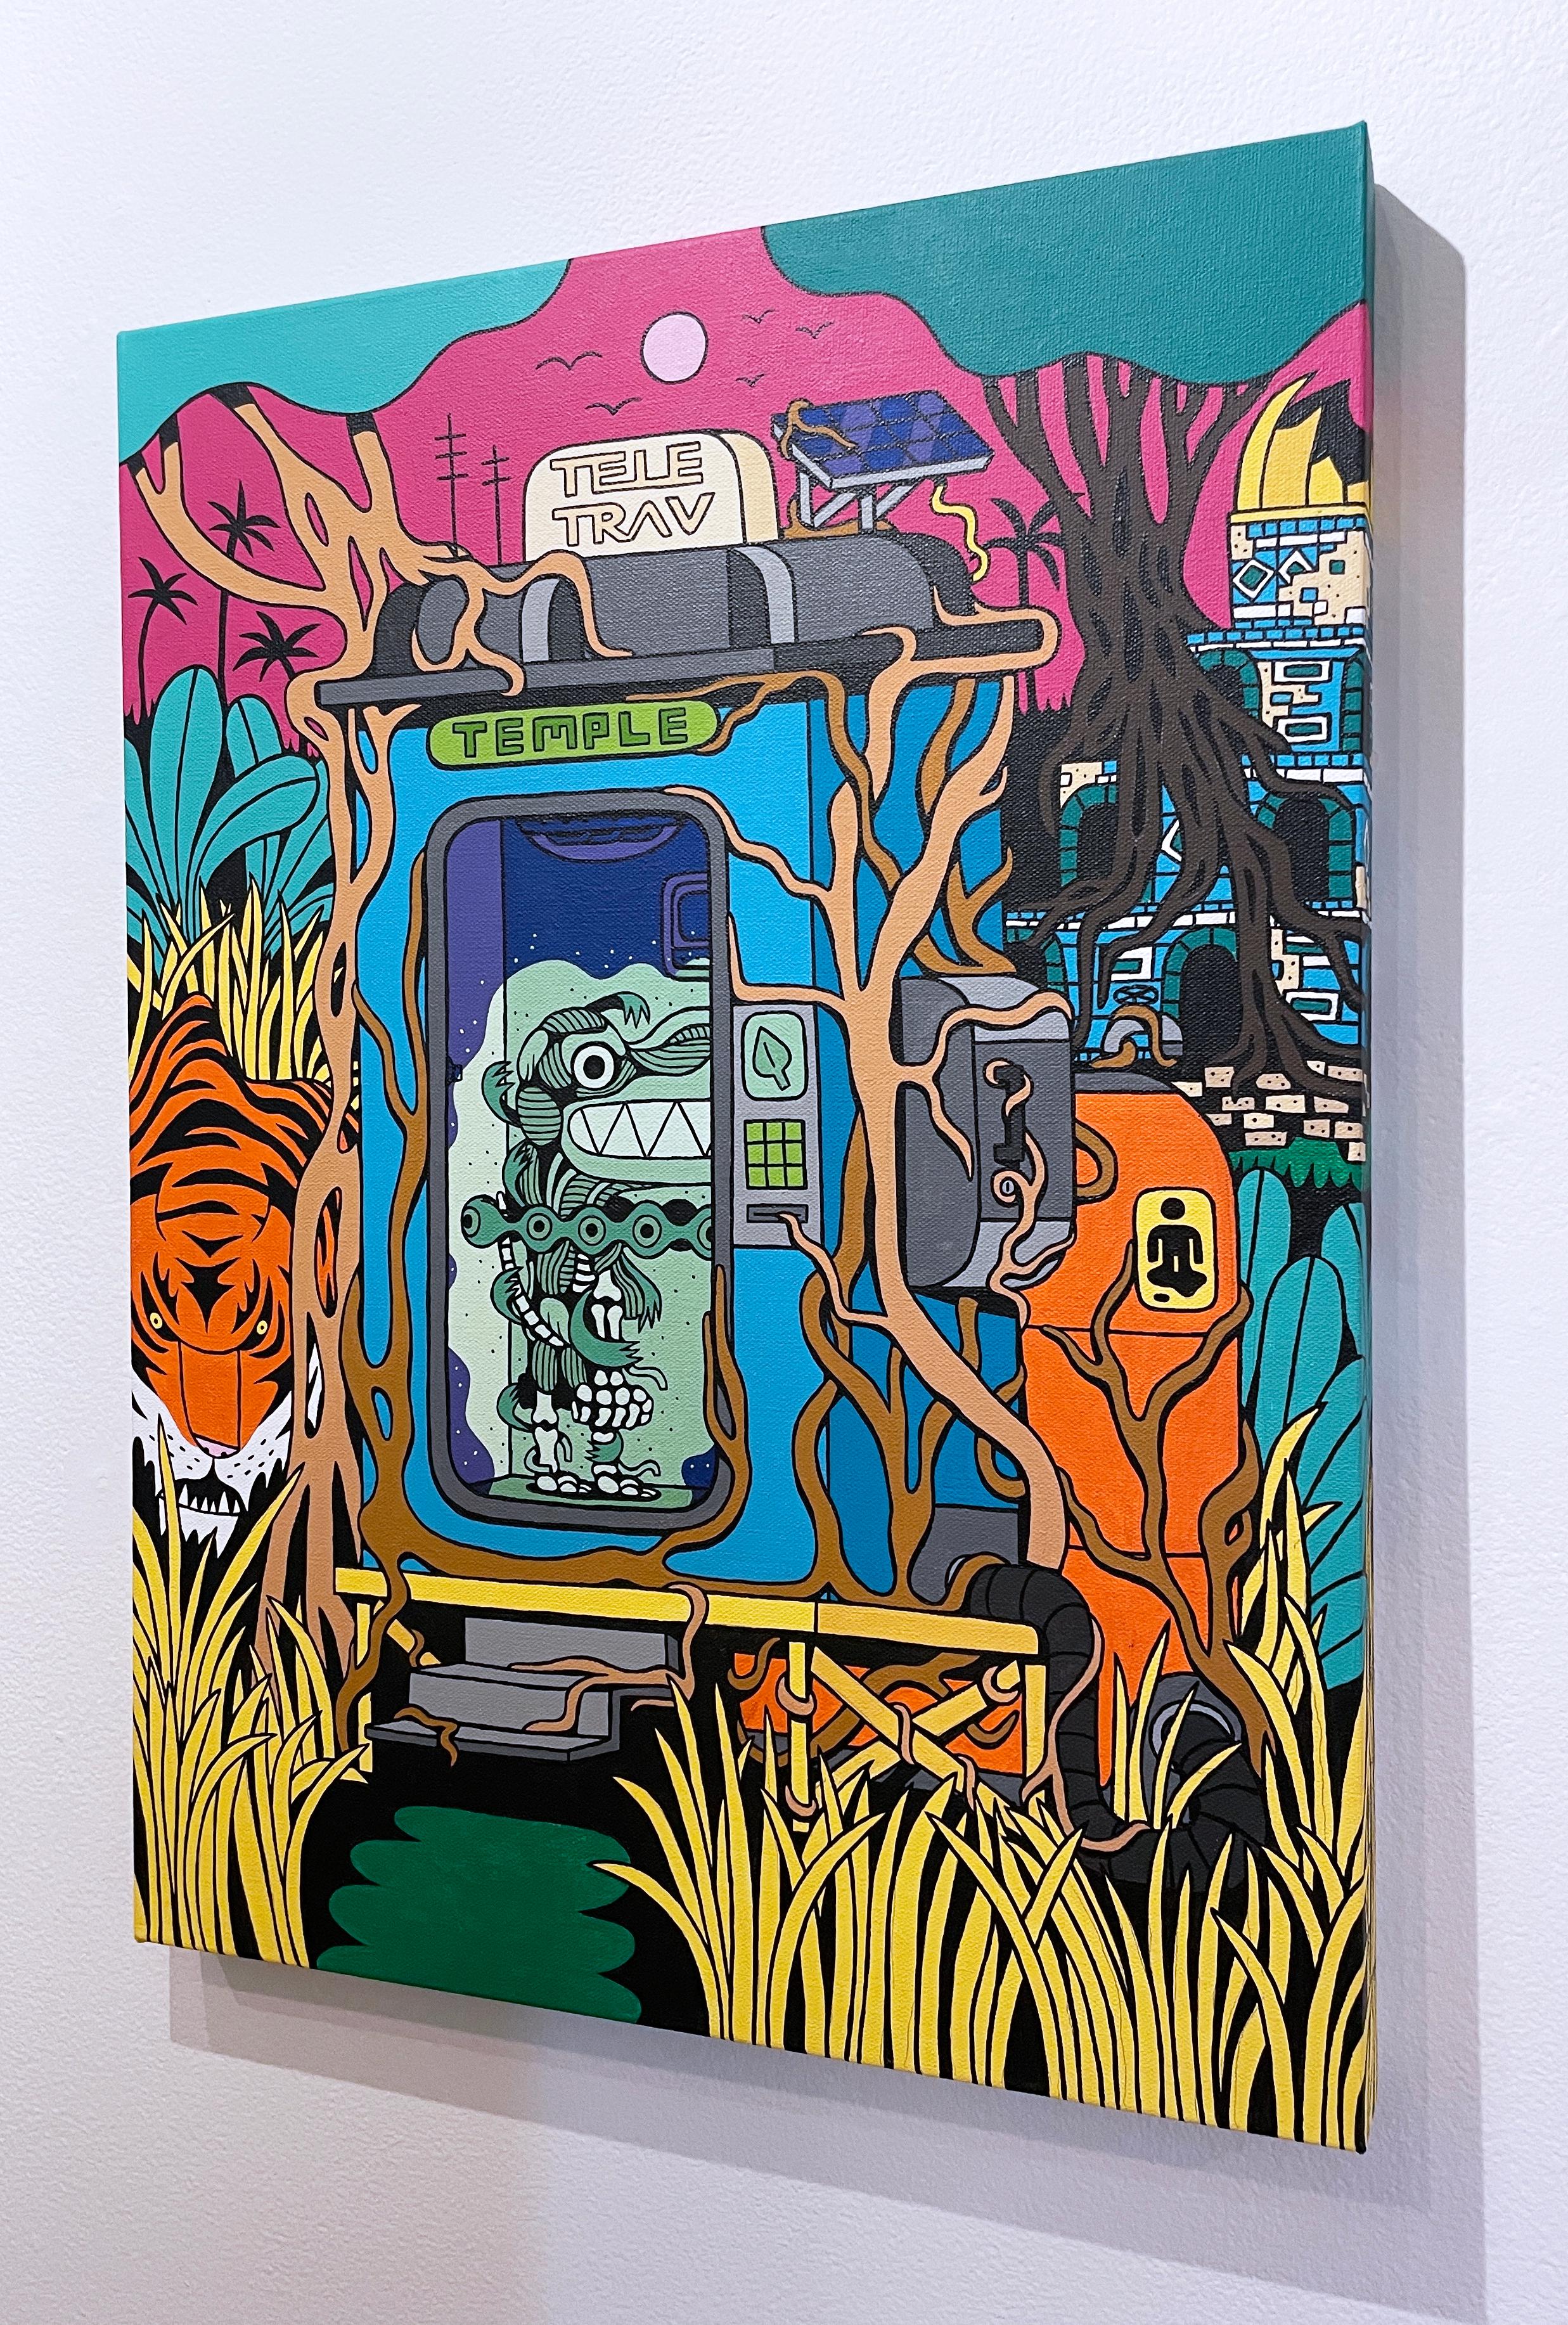 Tele-Trav (Temple) von BARC der Hund, Comic-Buchstil, hell, Dschungel, Tiger (Schwarz), Landscape Painting, von BARC the dog